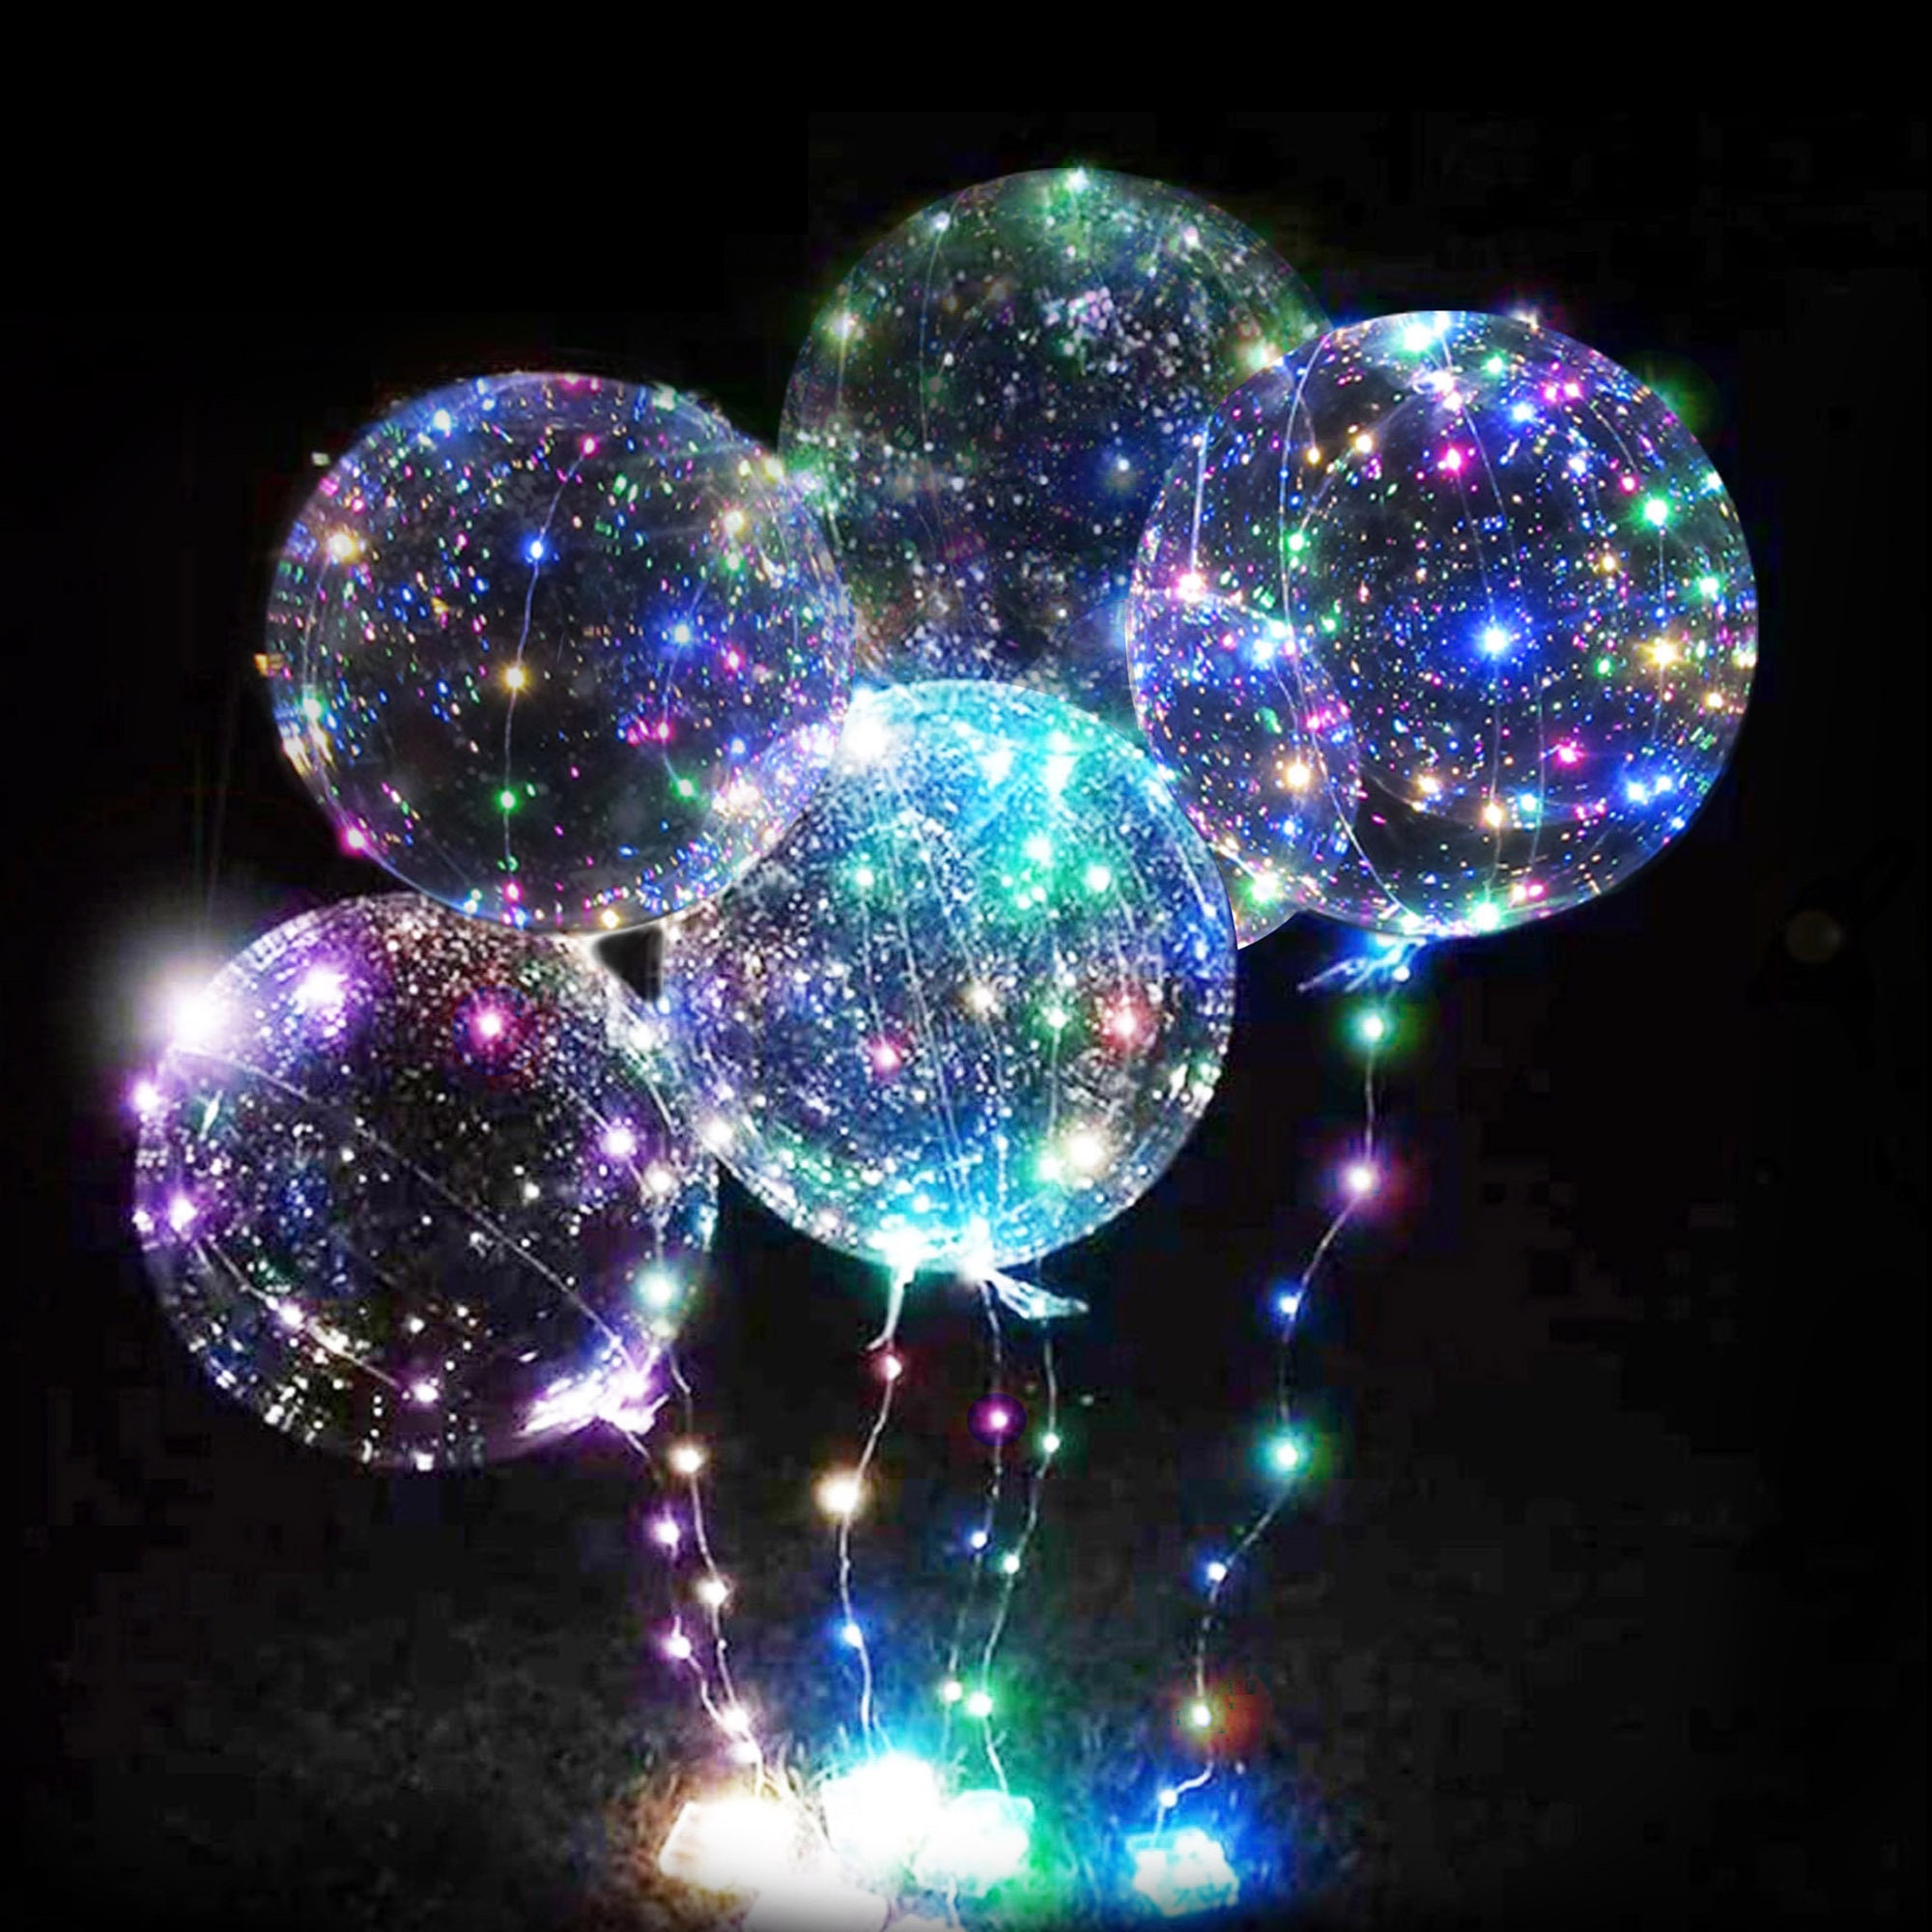 Ballon Lumineux Multicolore - ballon gonflable led - Badaboum